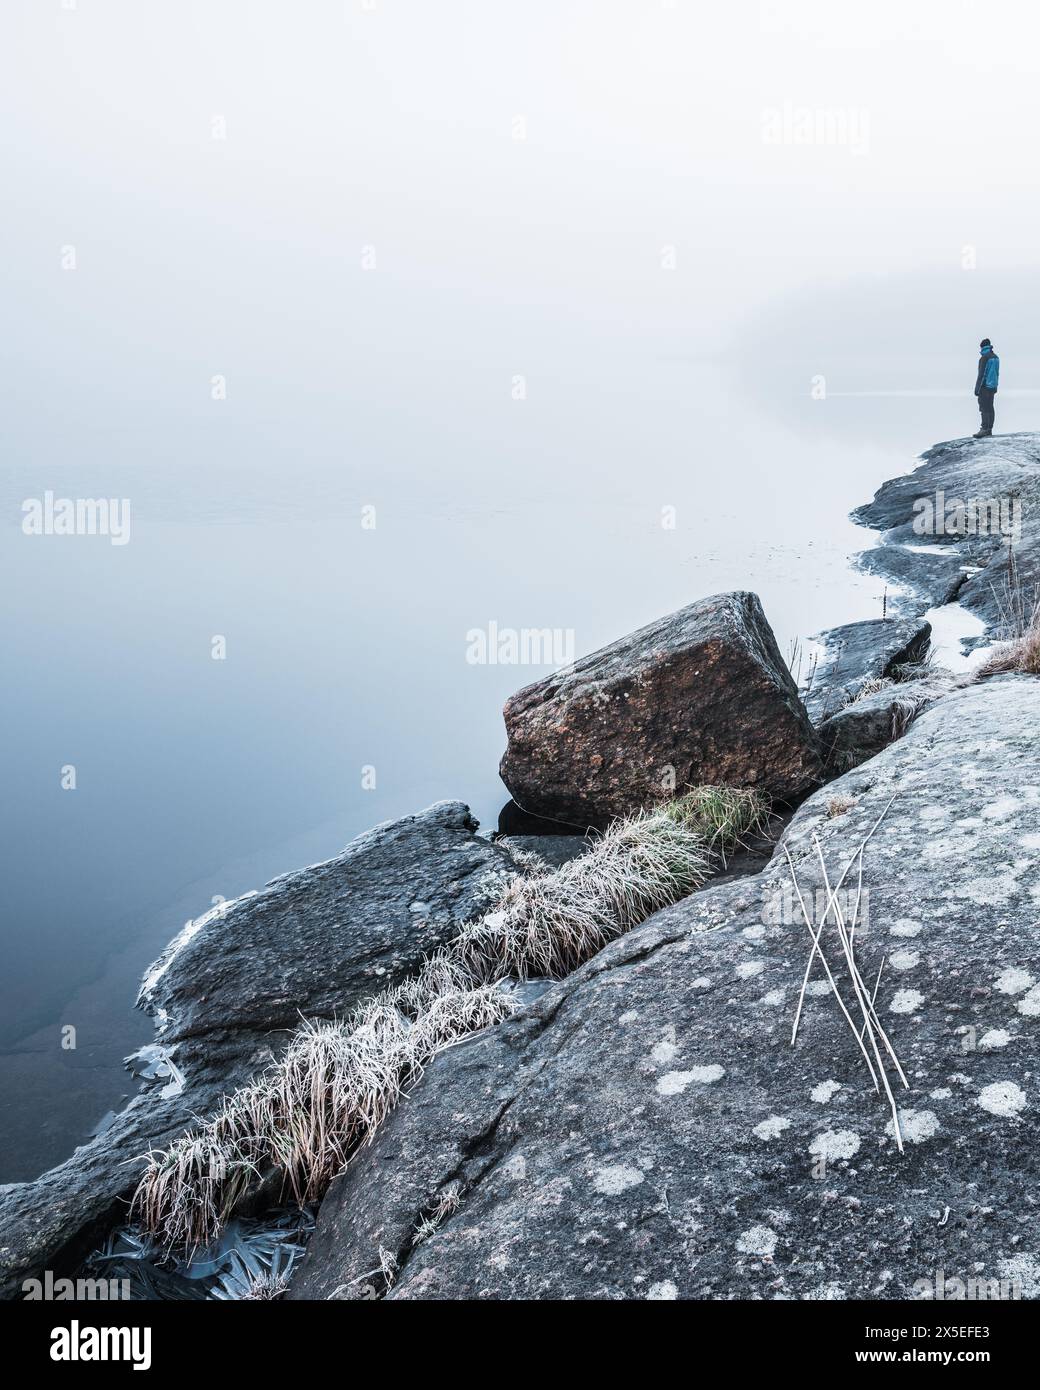 Une personne seule se tient au bord d'un lac serein couvert de brume. L'atmosphère tôt le matin est tranquille, avec des rochers couverts de gel et de l'herbe indicati Banque D'Images